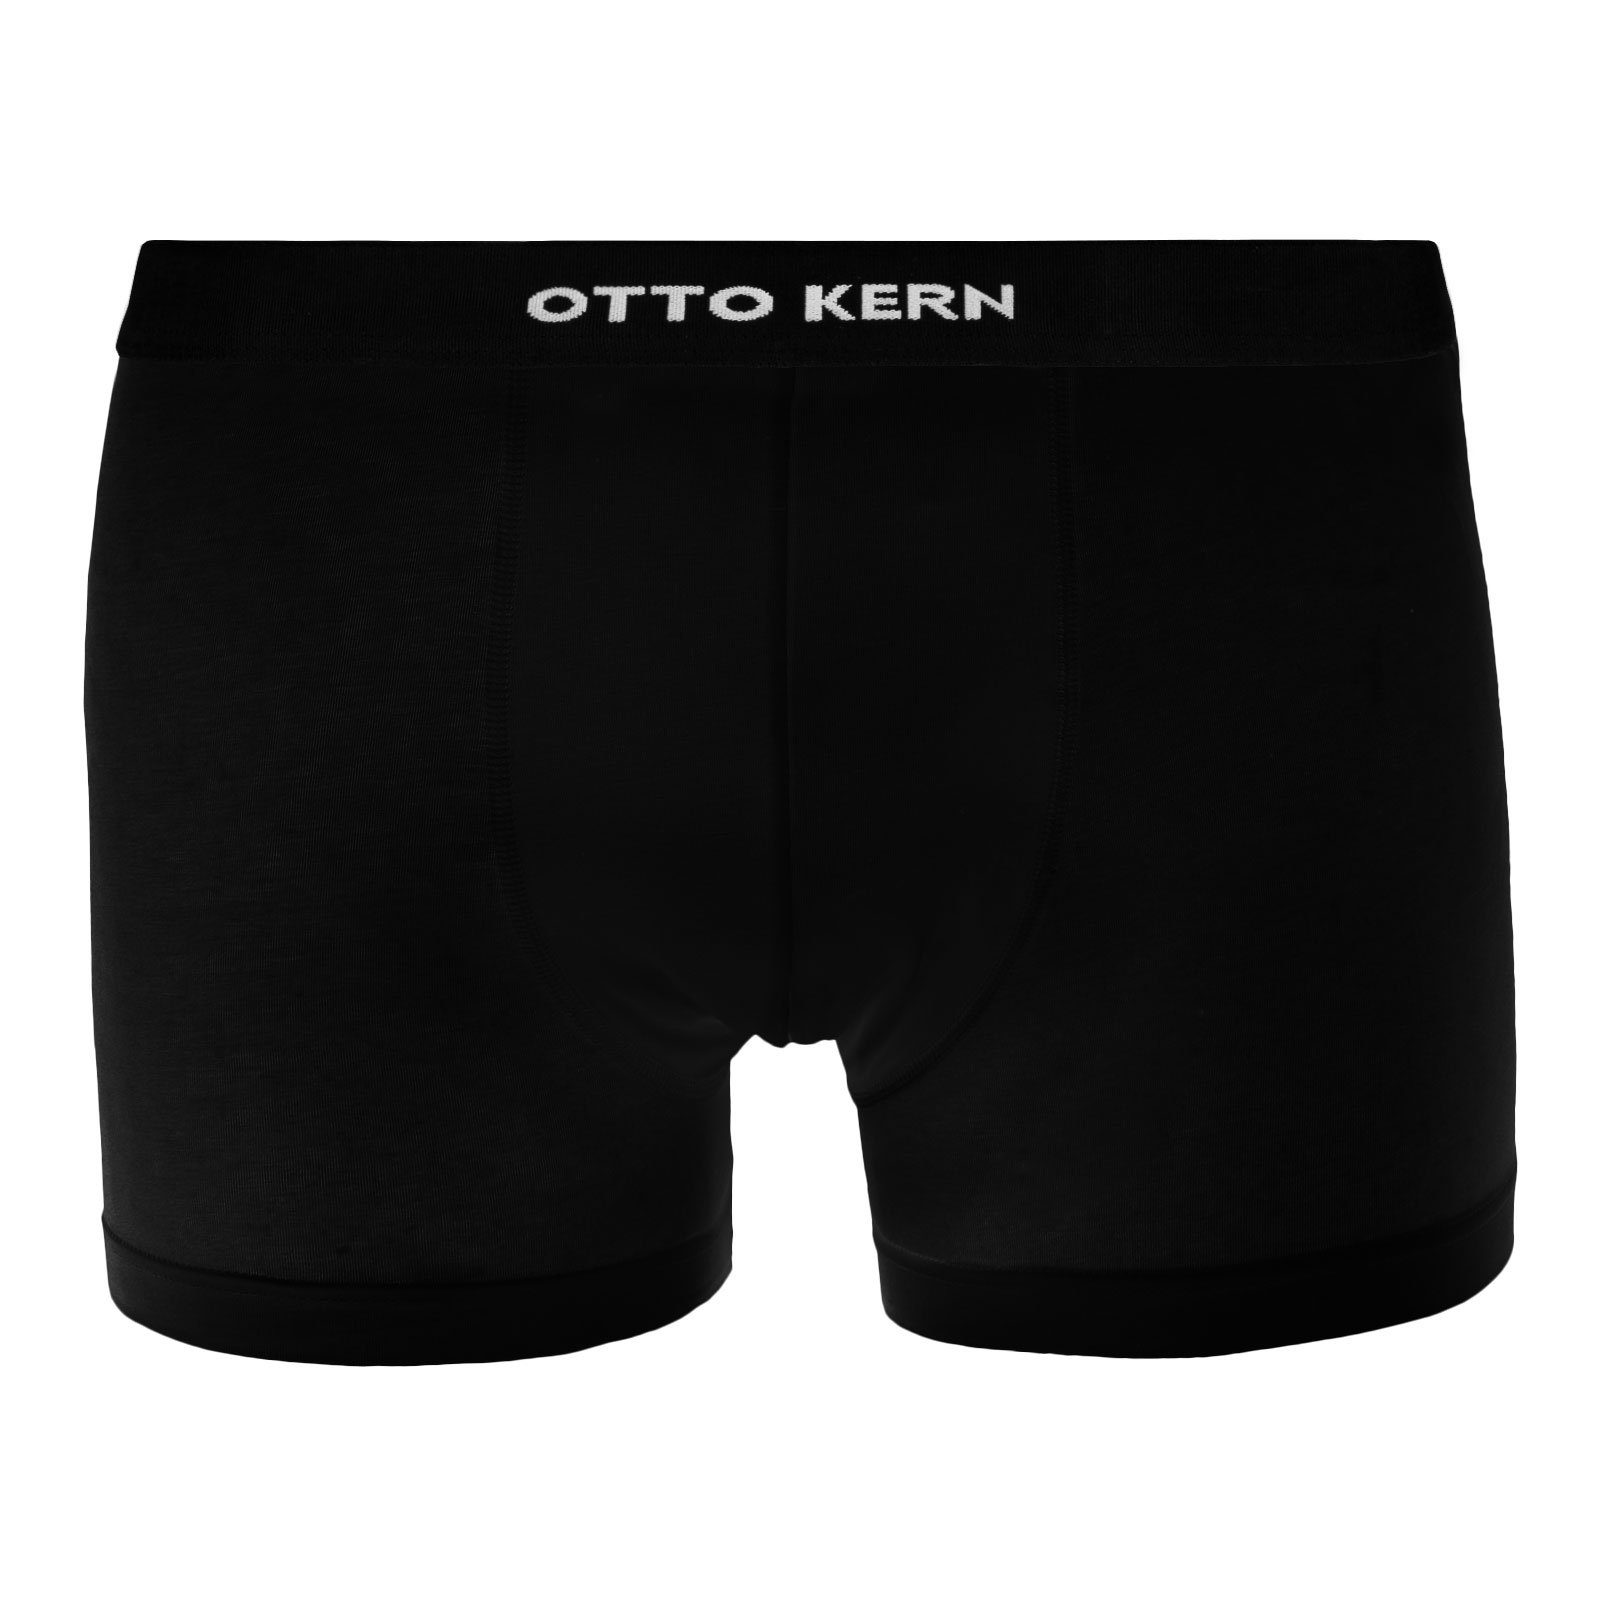 Wäsche/Bademode Boxershorts Otto Kern Trunk Pant ohne Eingriff mit markantem Logo mittig auf dem Komfortbund